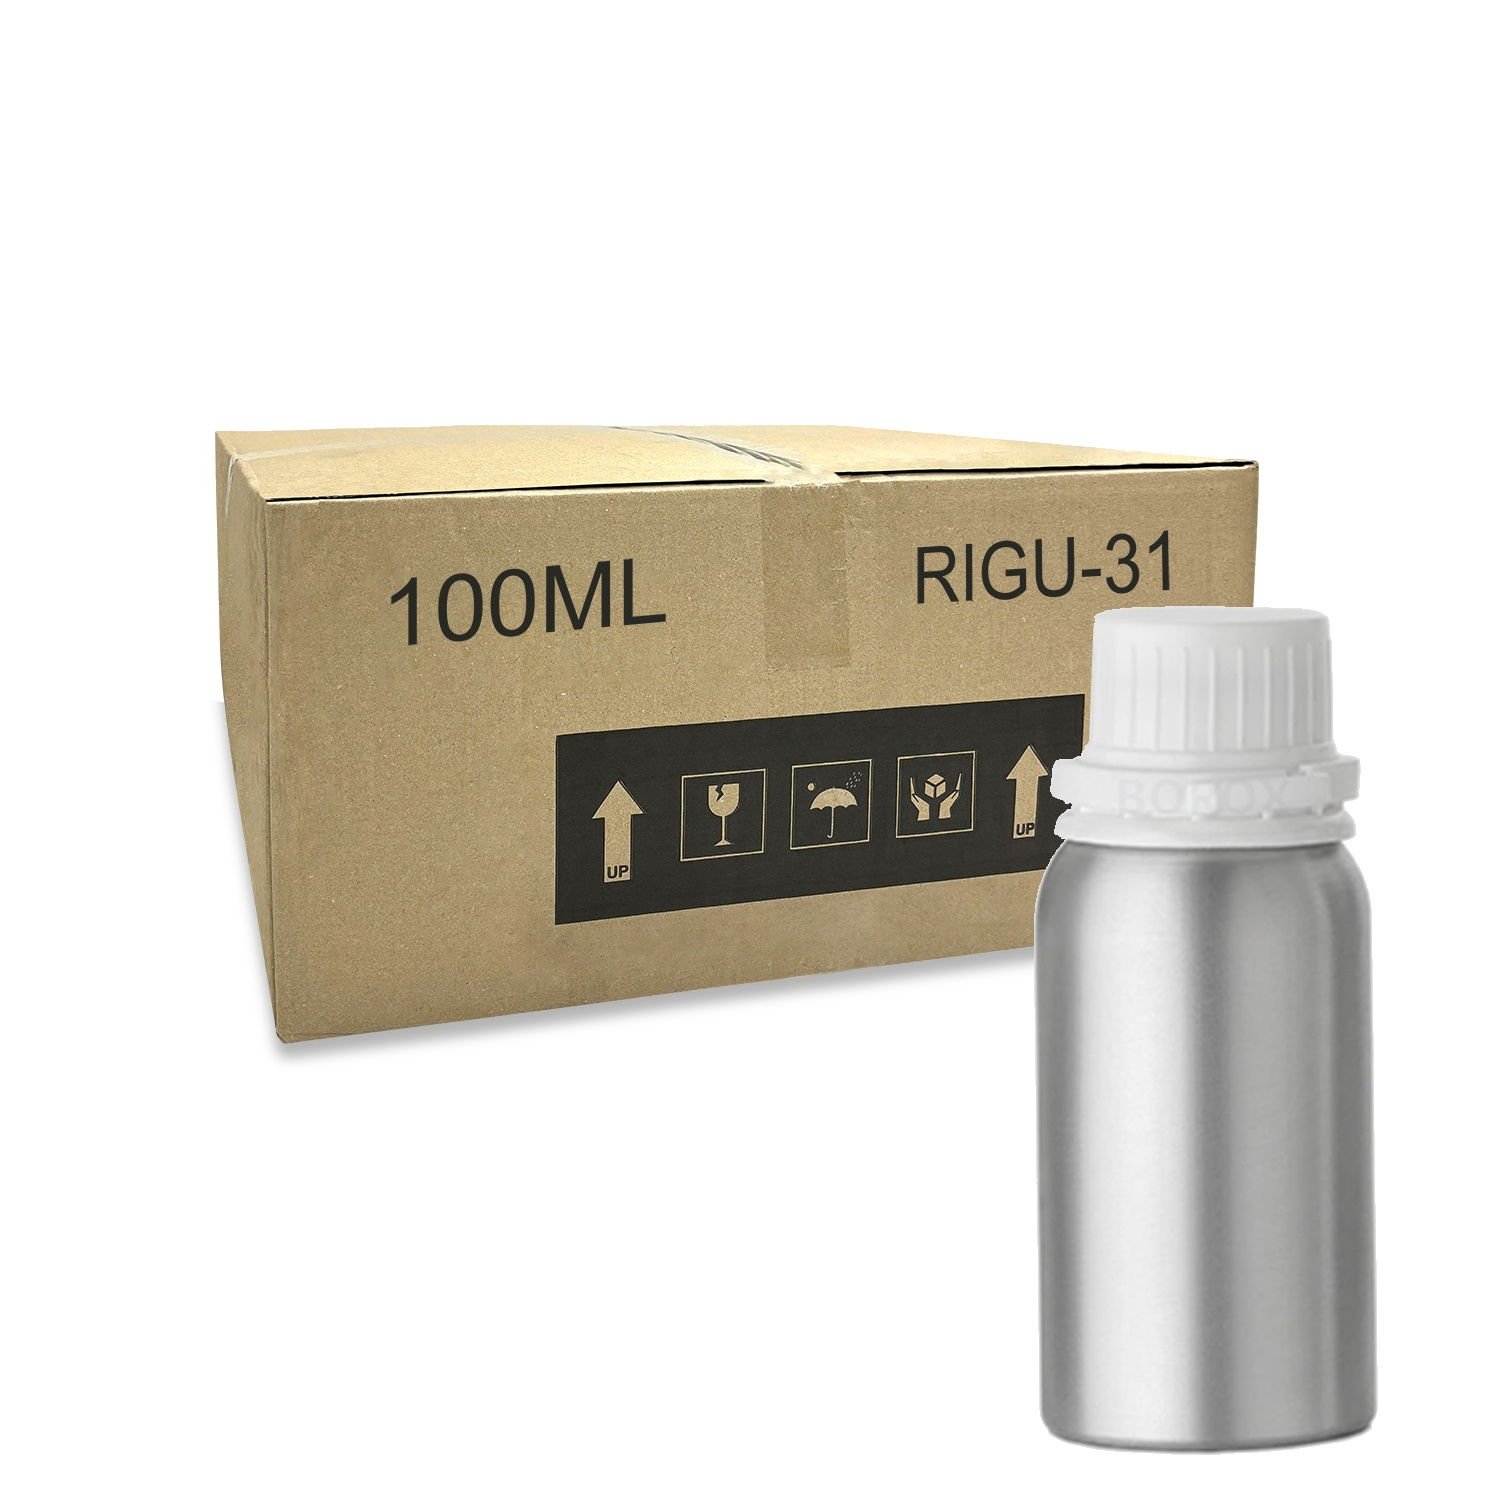 RIGU-31 Alüminyum Şişe 100 ml - Tıpalı ve Kapaklı Şişe Metal - 240 Adet-Koli Toptan